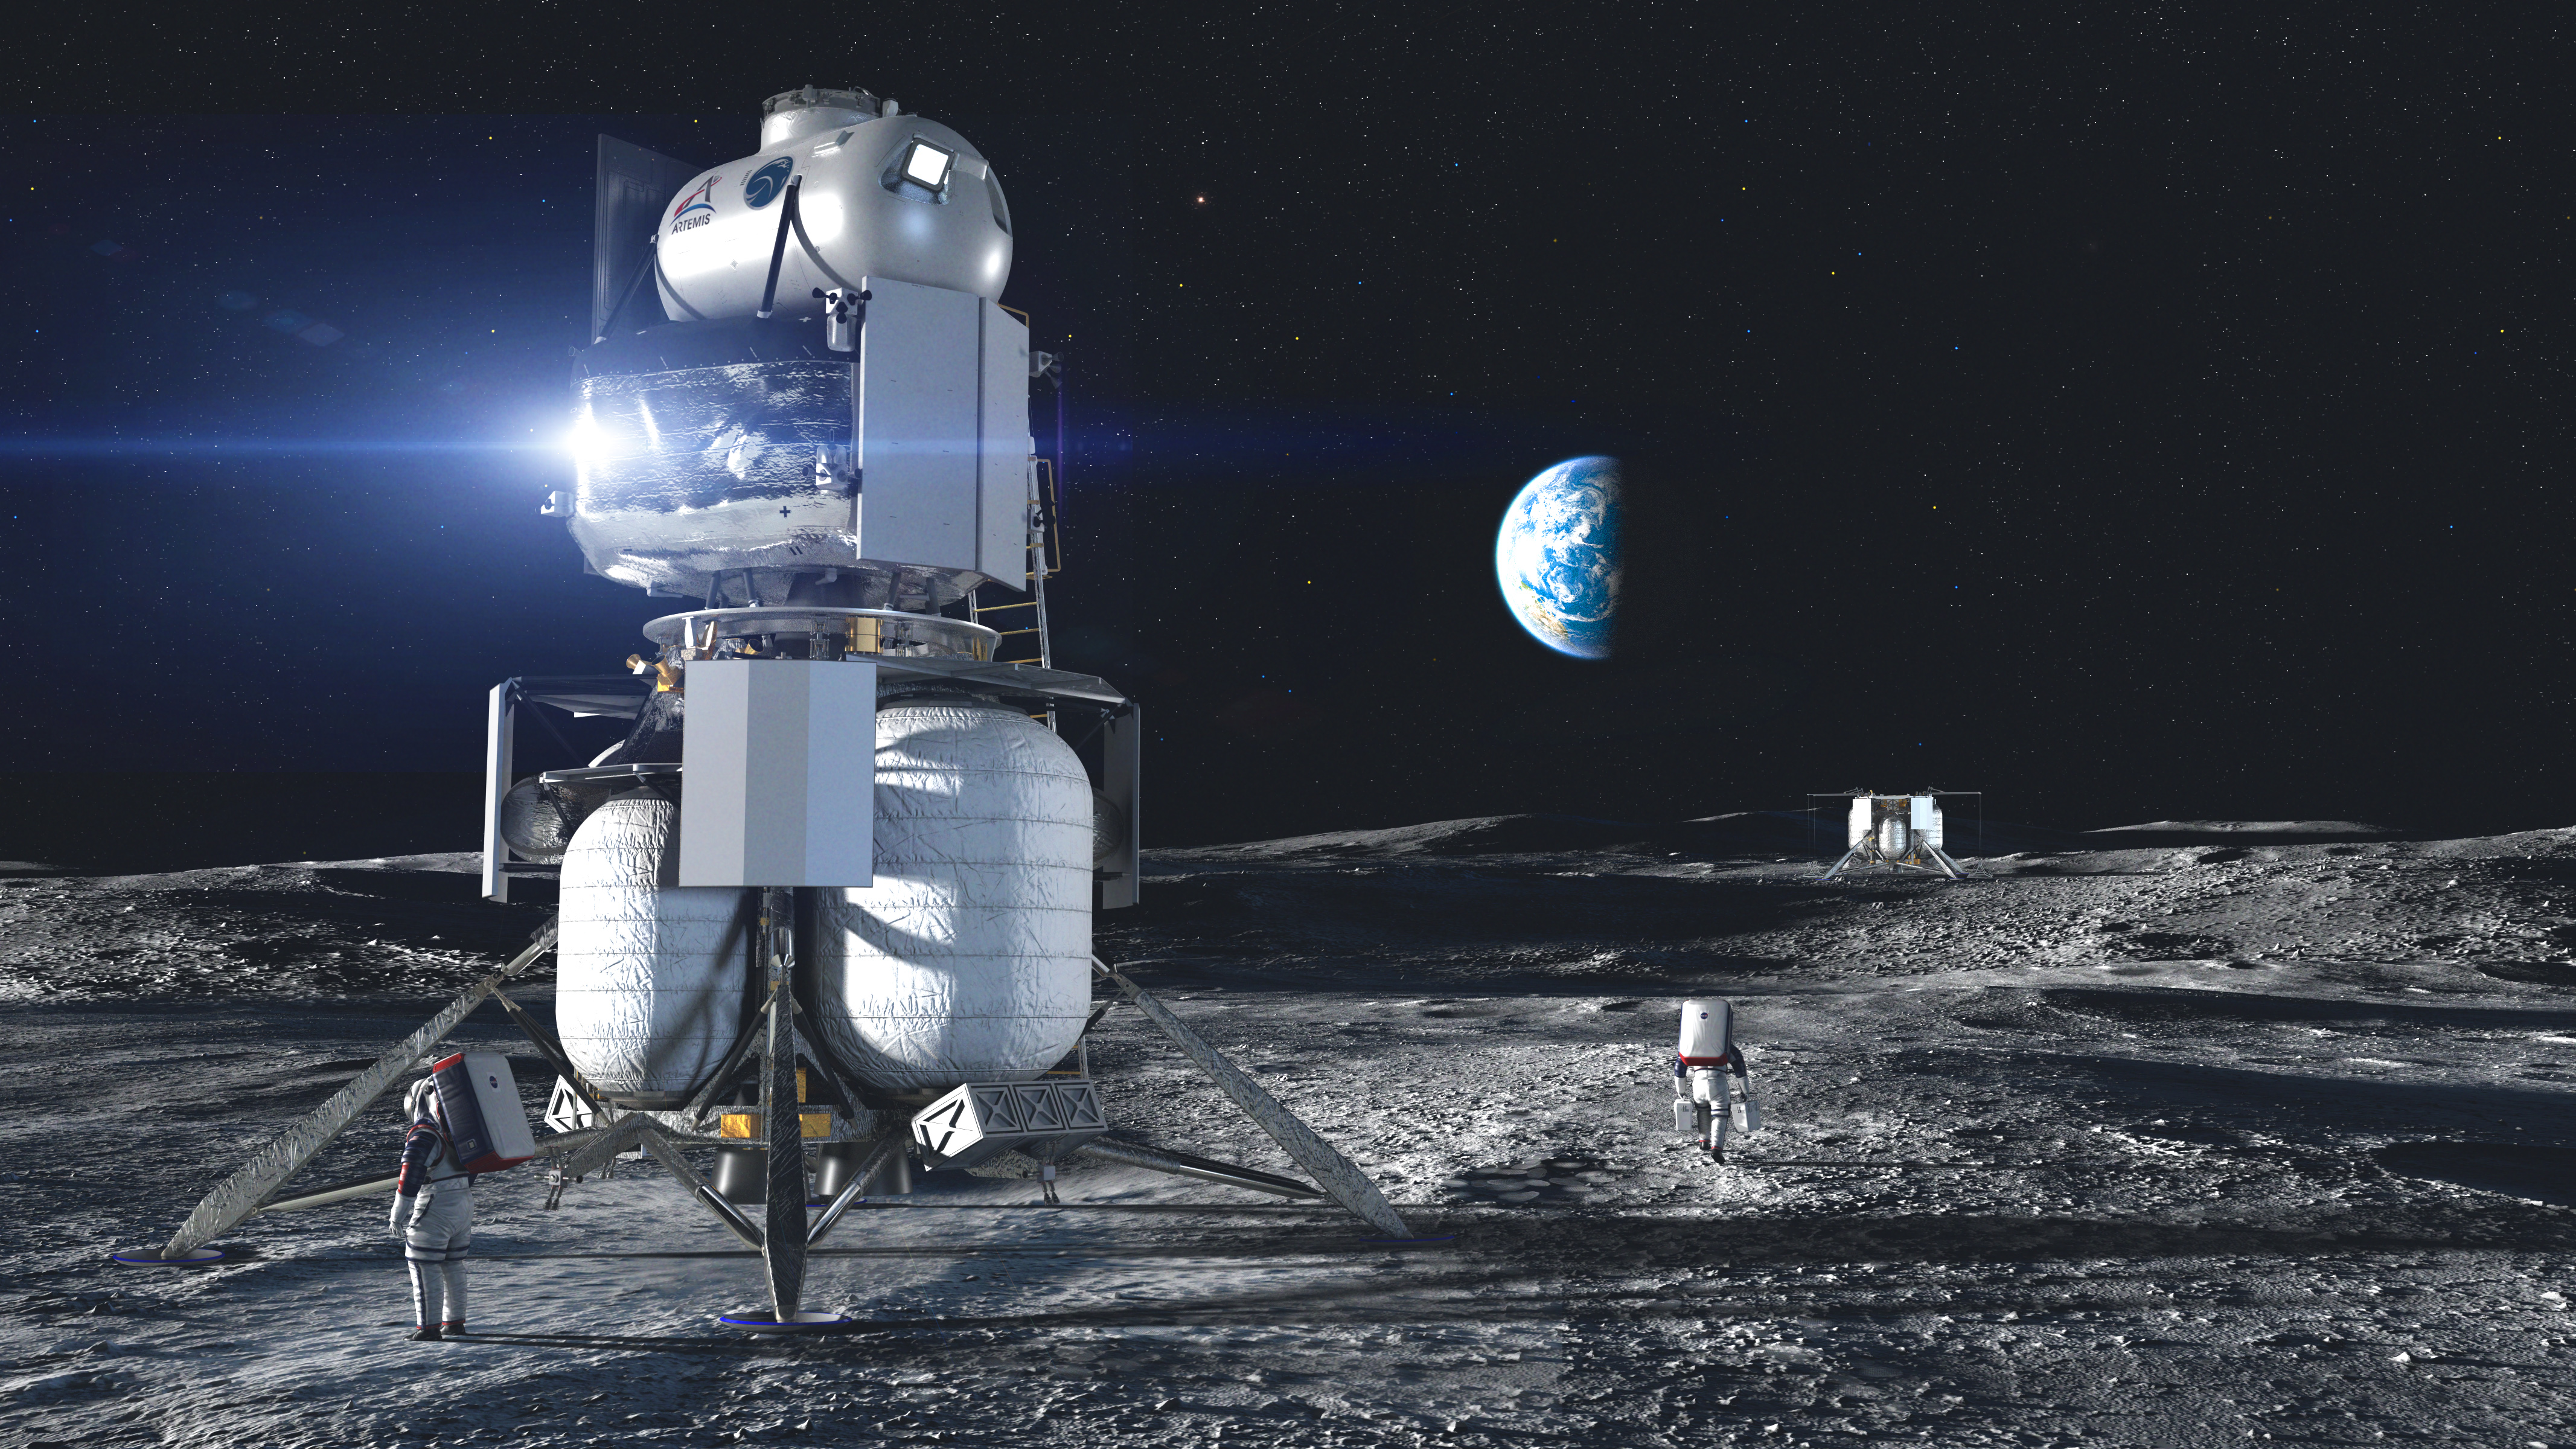 Wizja artystyczna przedstawiająca lądownik firmy Blue Origin na Księżycu (Źródło: Blue Origin)